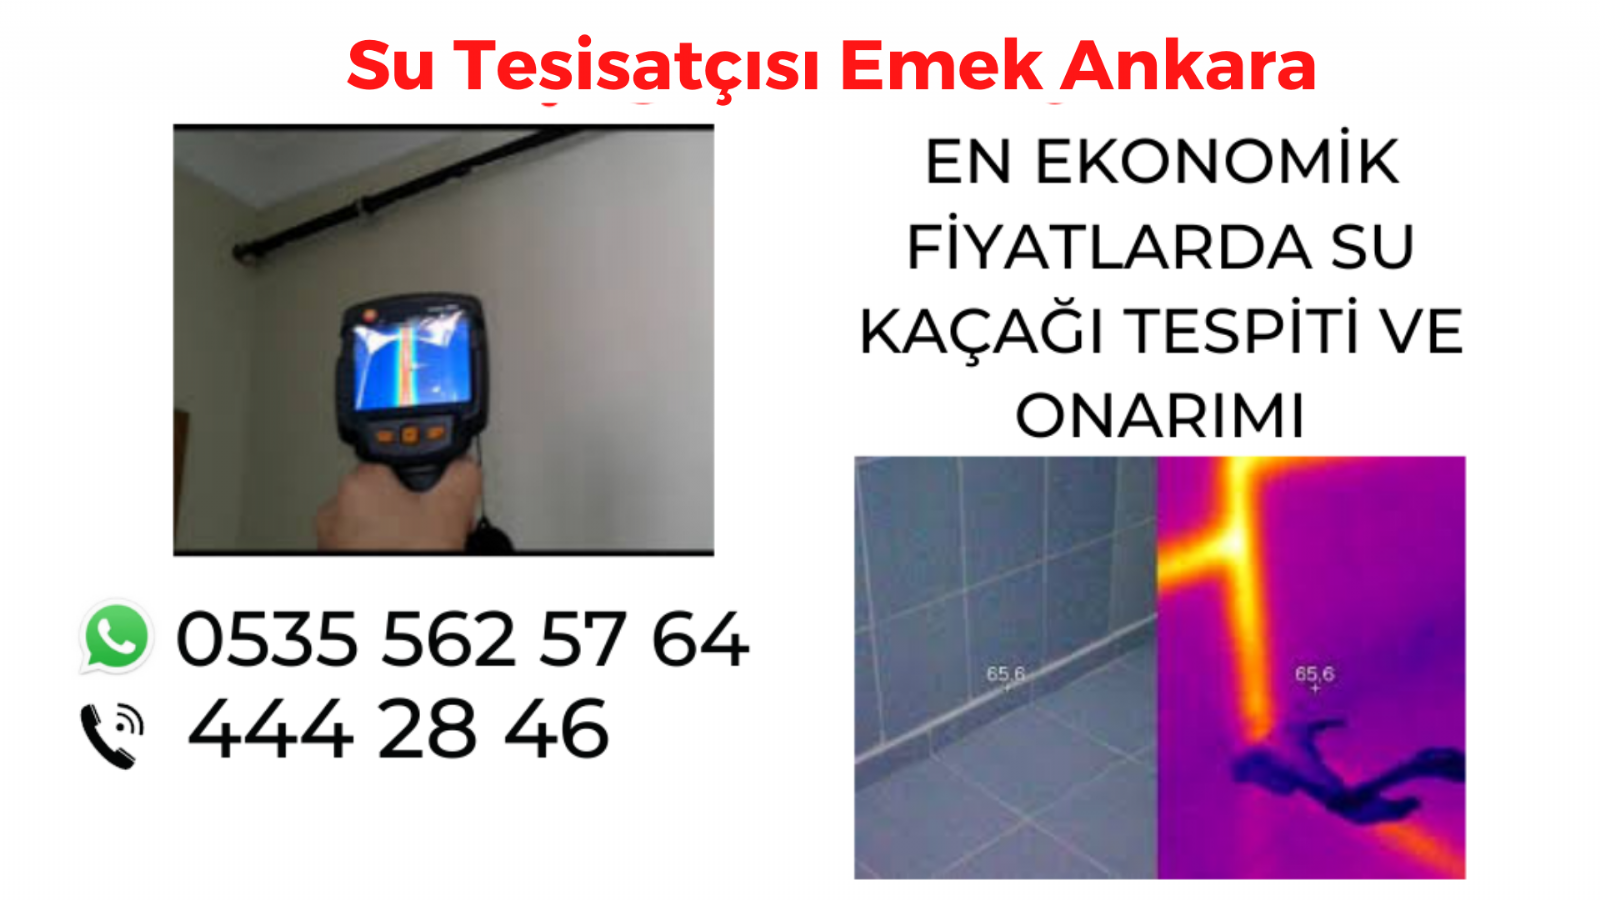 Su Tesisatçısı Emek Ankara 